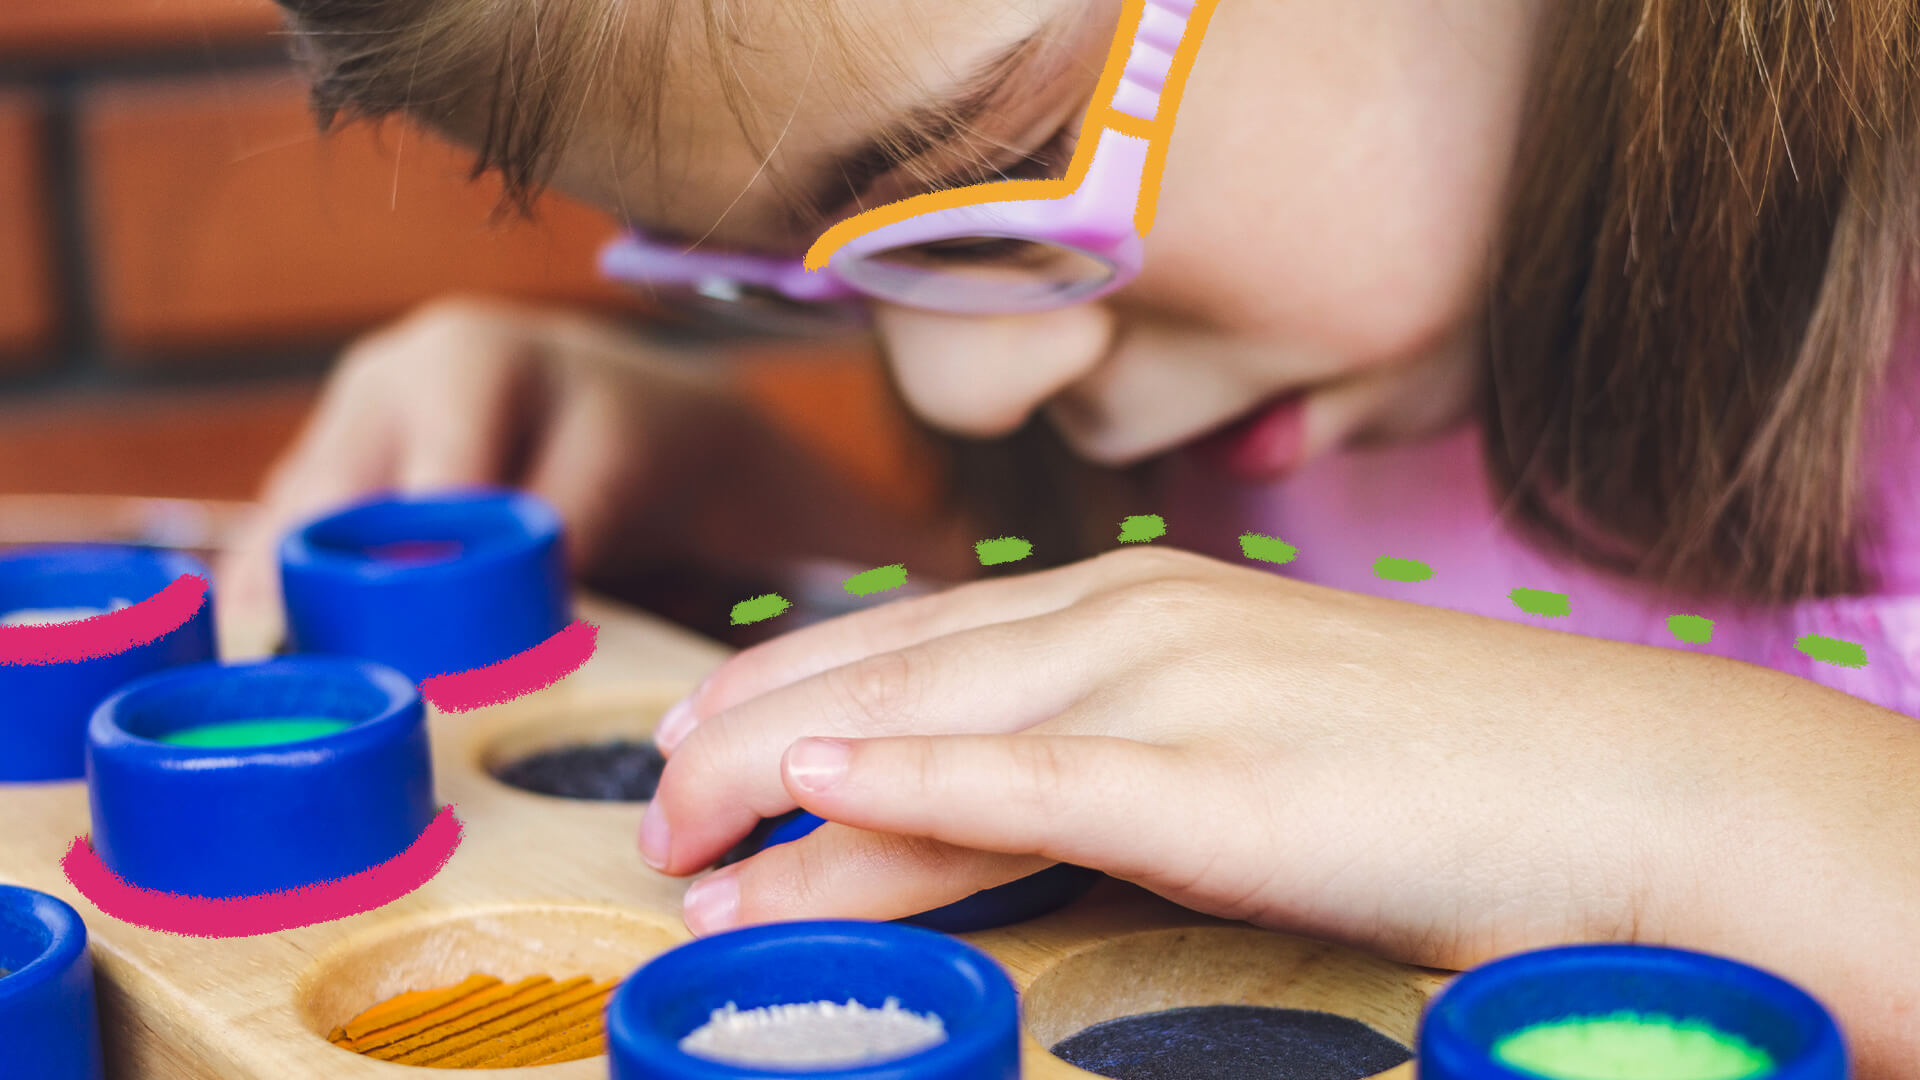 Atividades inclusivas: foto de uma criança de pele clara que brinca com pigmentos de diversas cores em uma superfície de madeira.